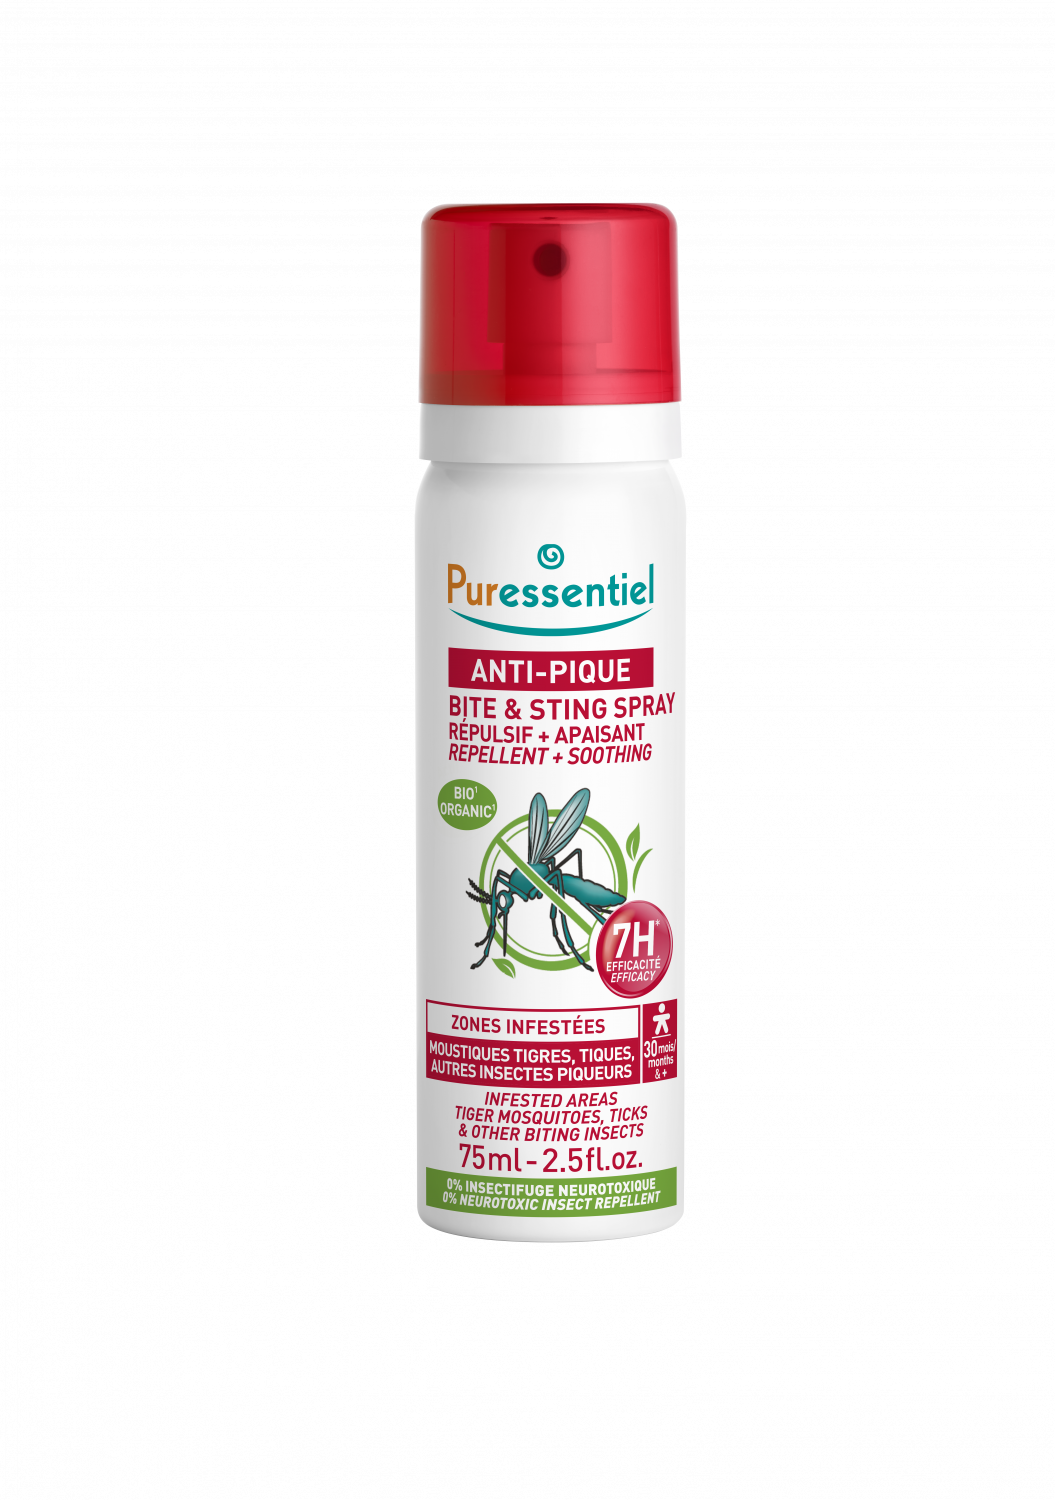 Puressentiel - Spray Aérien Assainissant aux 41 Huiles Essentielles -  Efficacité prouvée contre les virus, germes et bactéries - 500ml :  : Cuisine et Maison